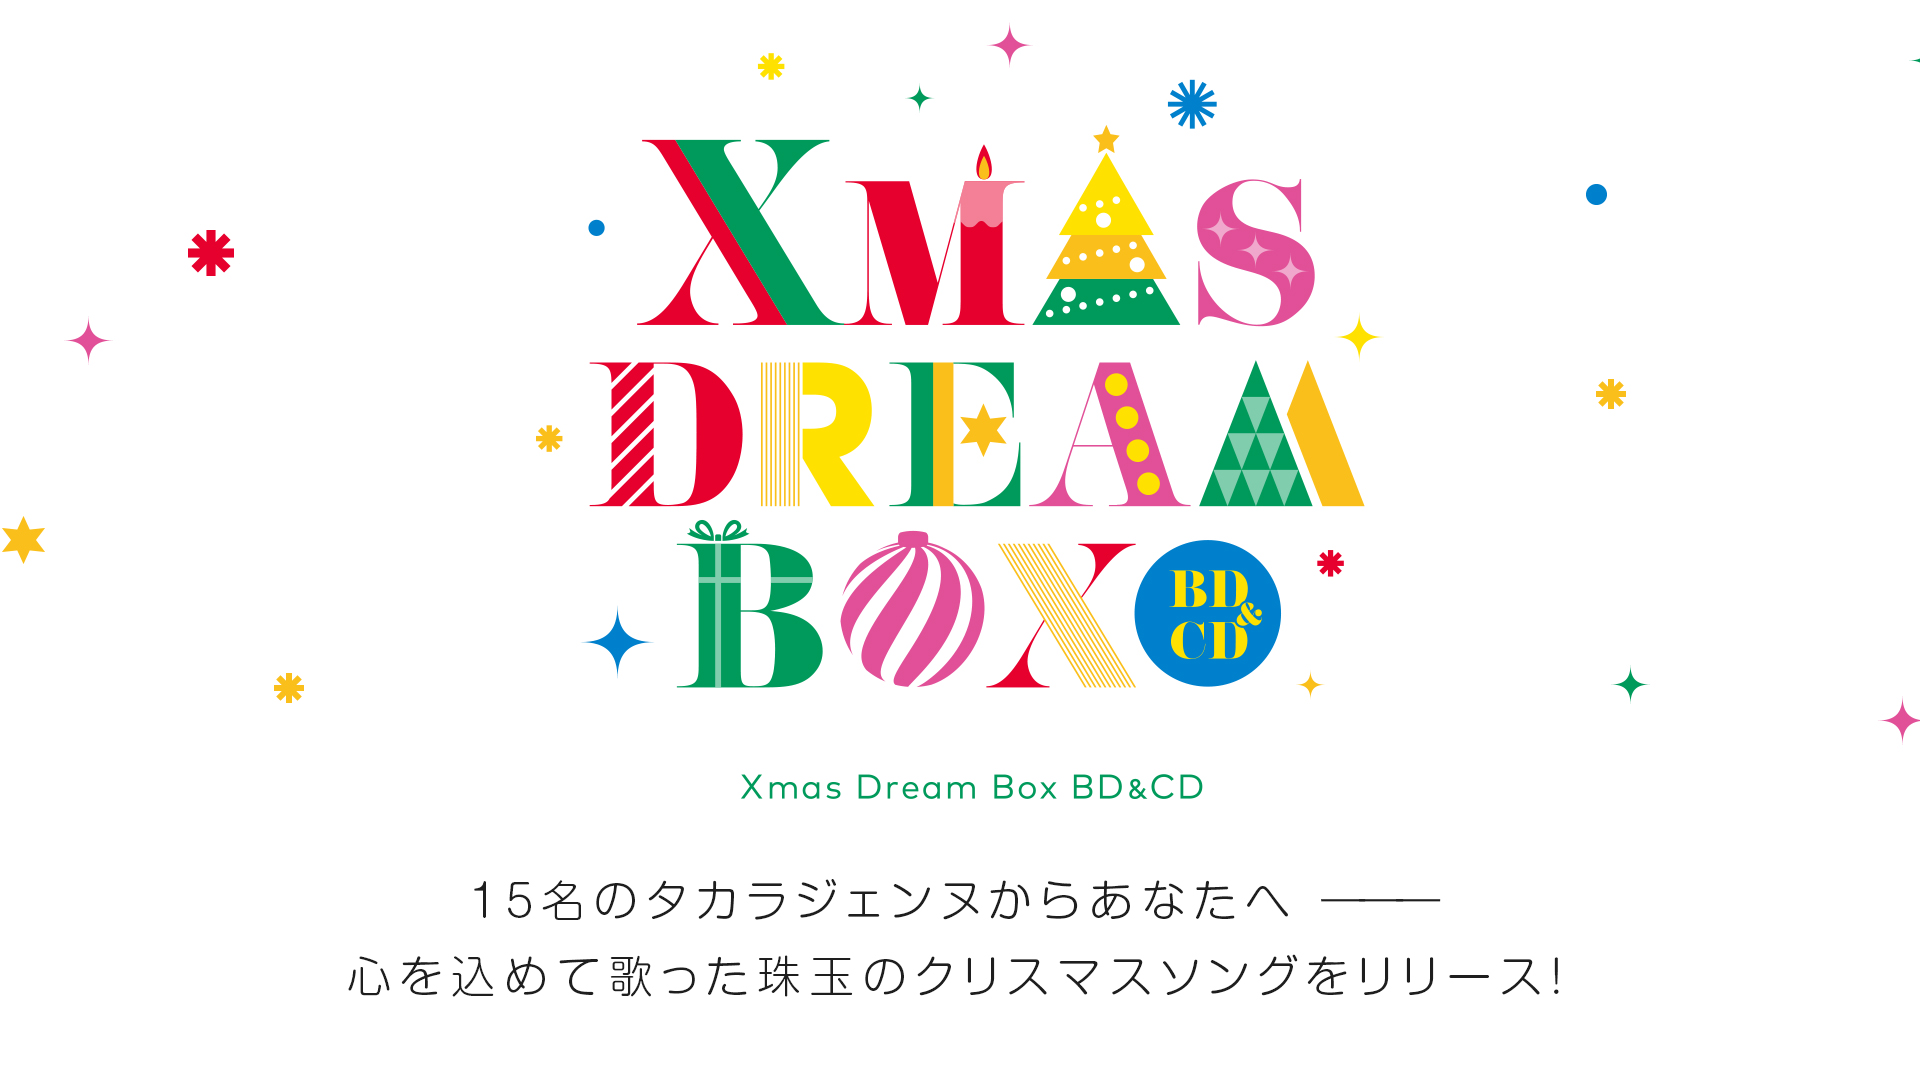 Xmas Dream Box BD&CD 15名のタカラジェンヌからあなたへ ———心を込めて歌った珠玉のクリスマスソングをリリース！